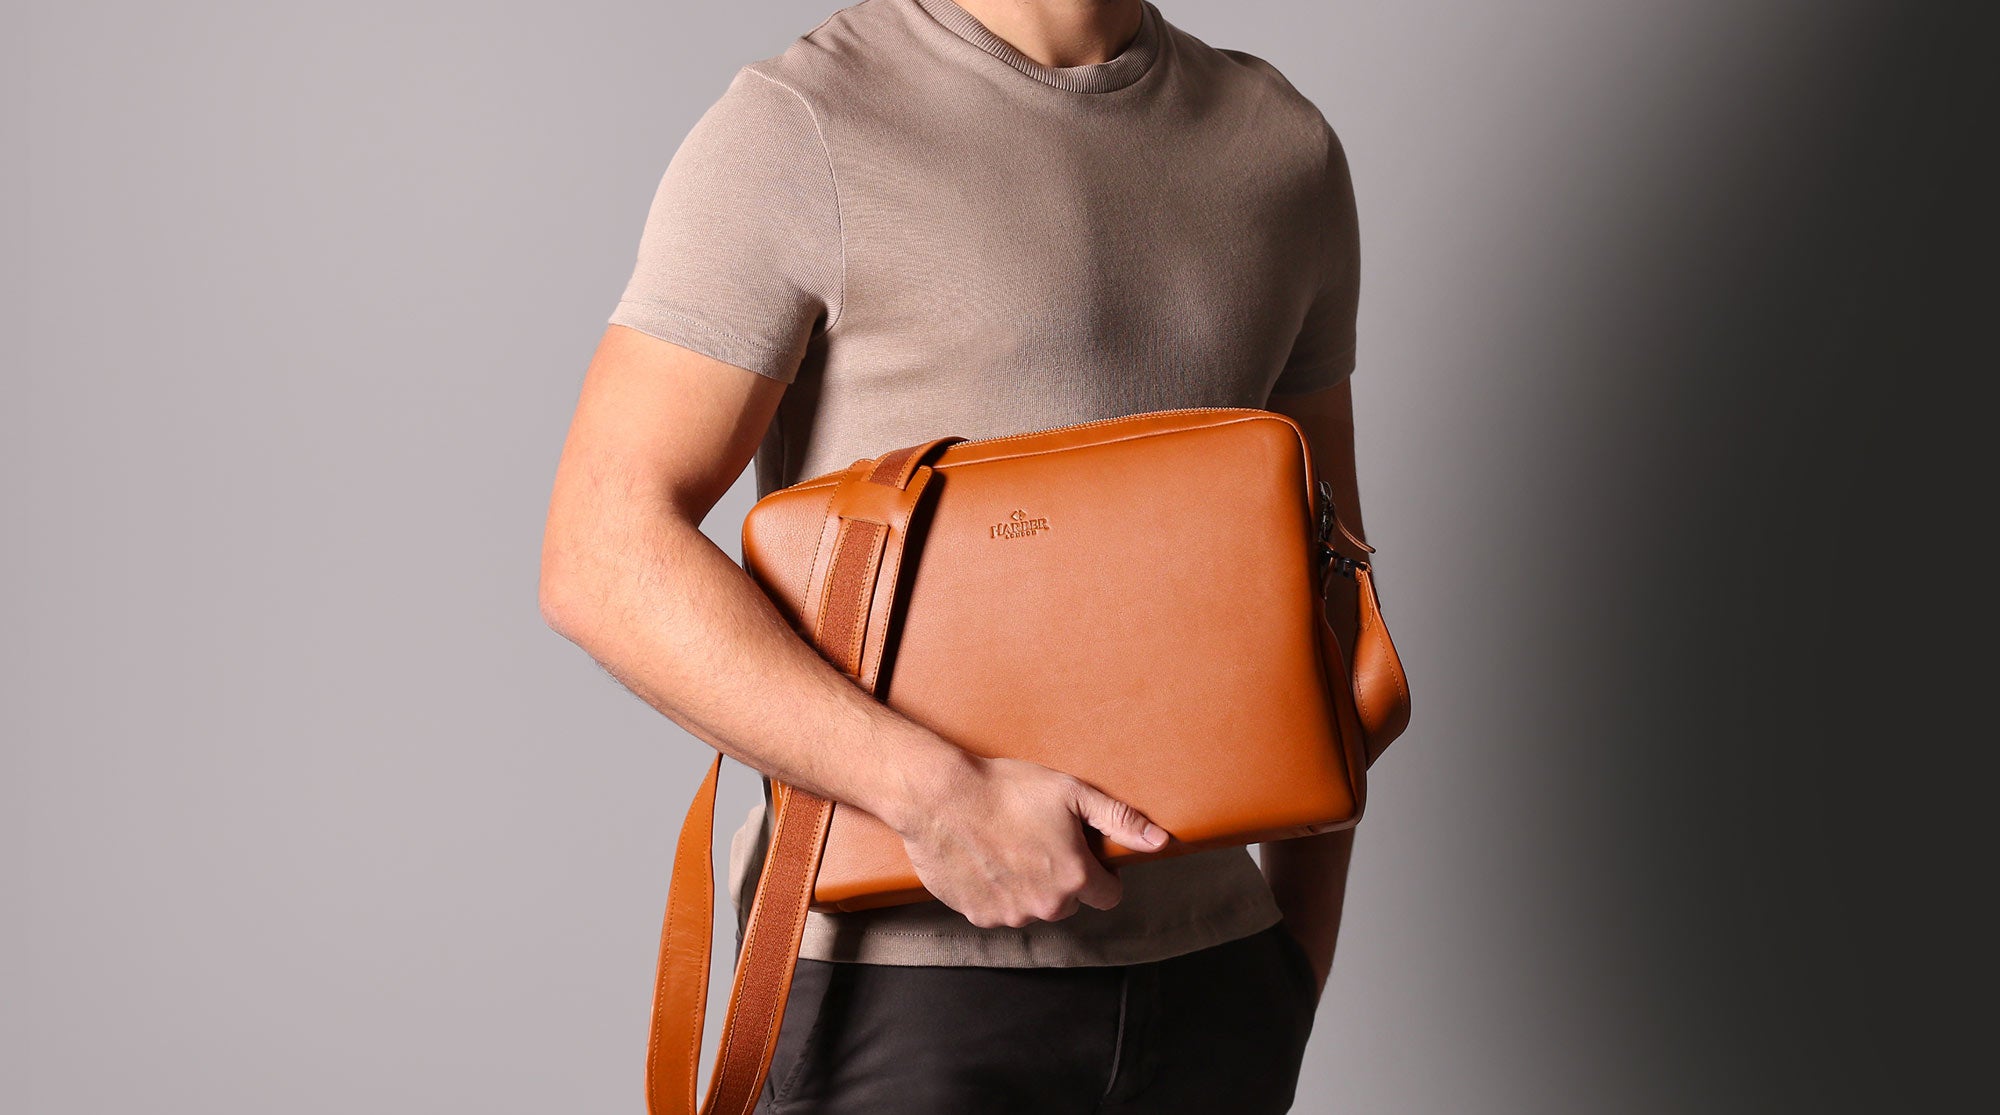 Leather Messenger Bag for MacBook